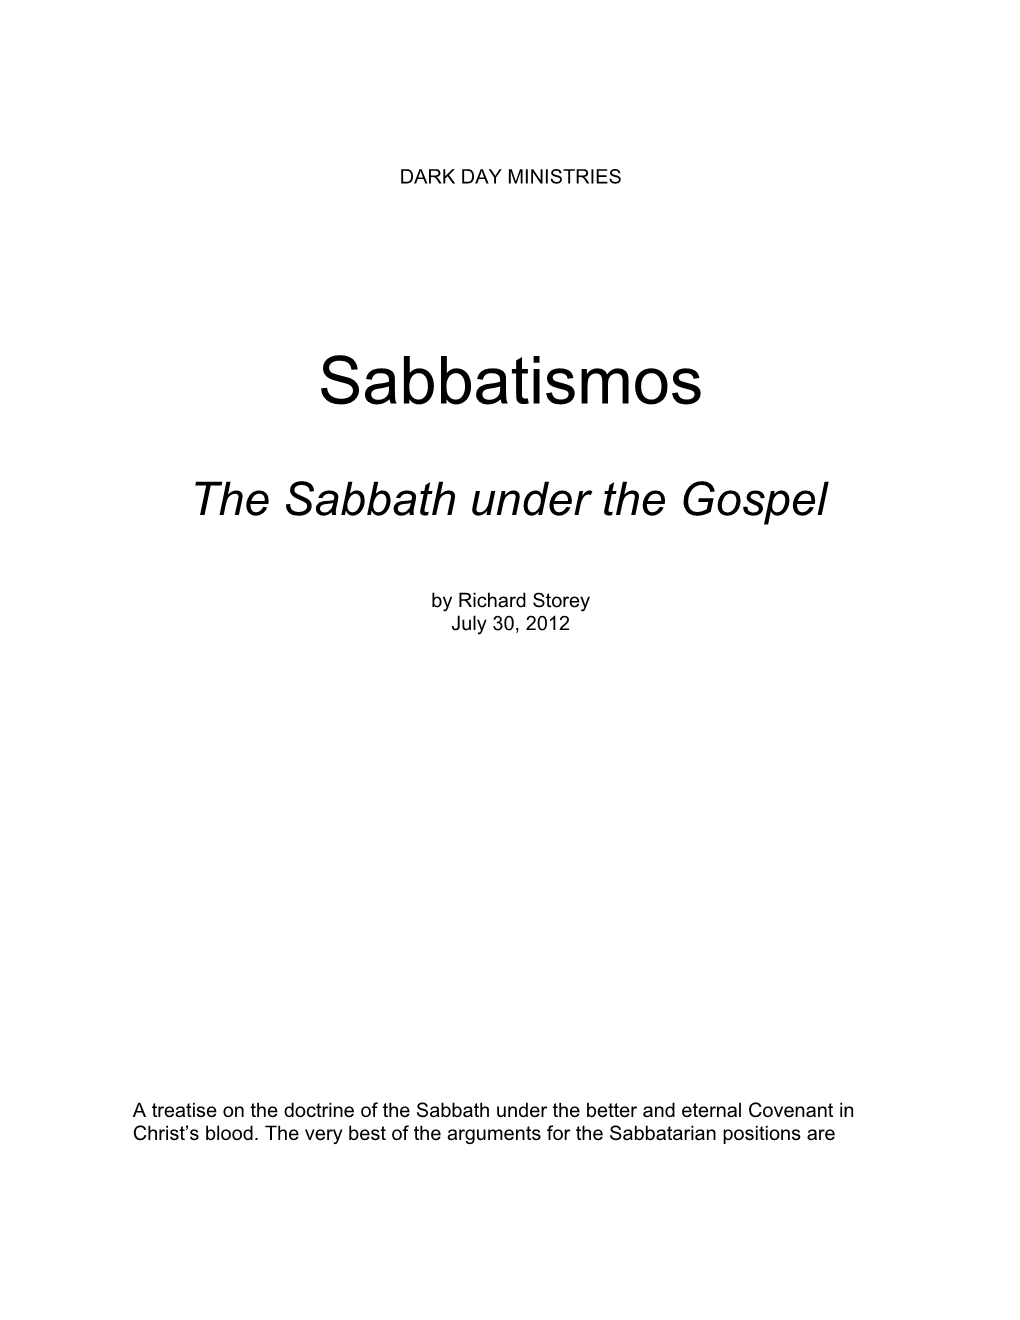 Sabbatismos : the Sabbath Udner the Gospel